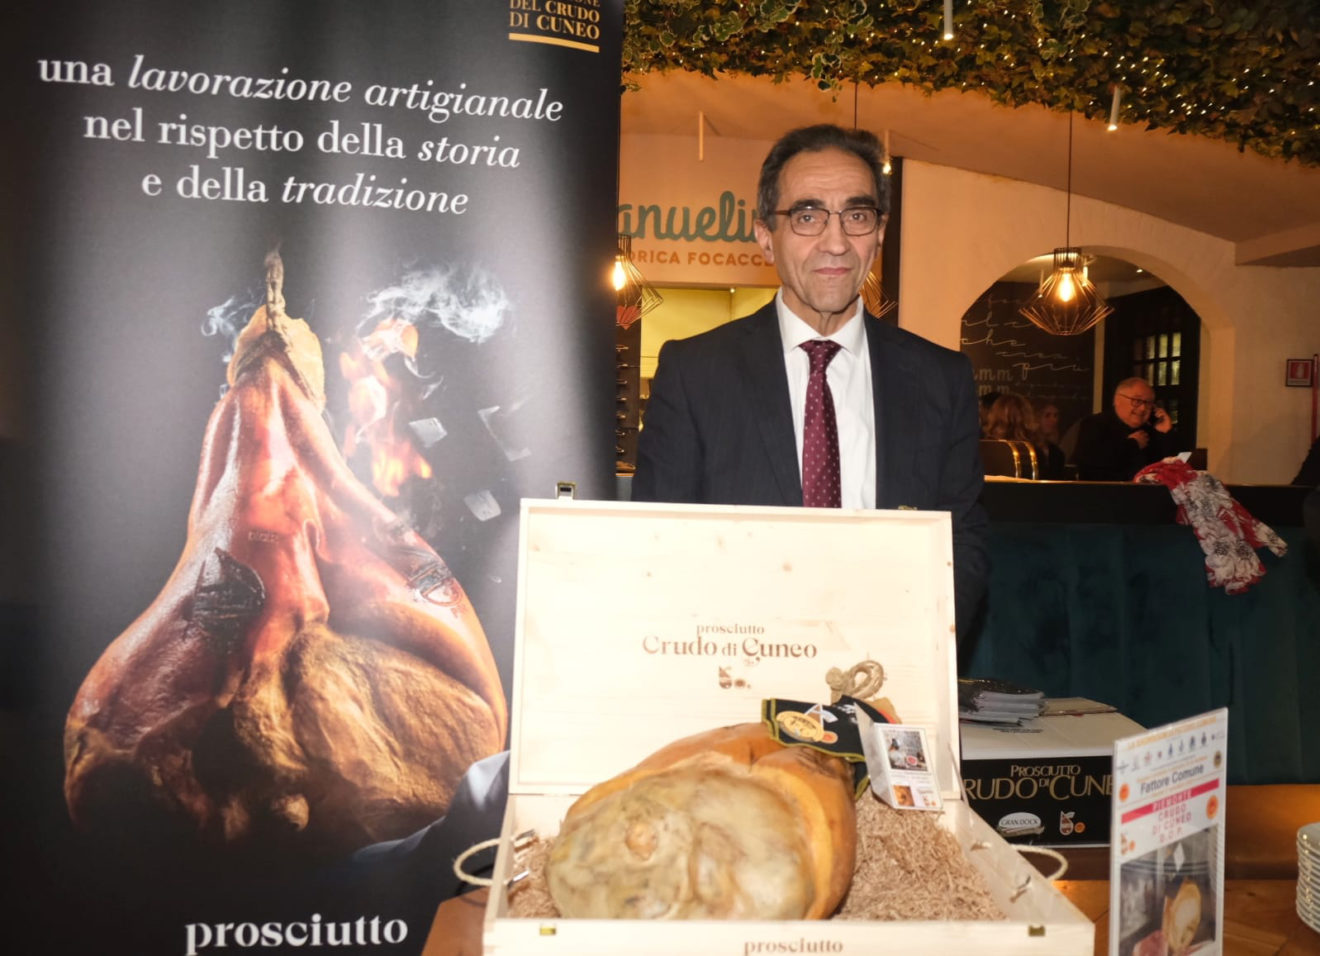 Crudo di Cuneo DOP: il prosciutto crudo piemontese dal sapore dolce e fragrante - Sapori News 